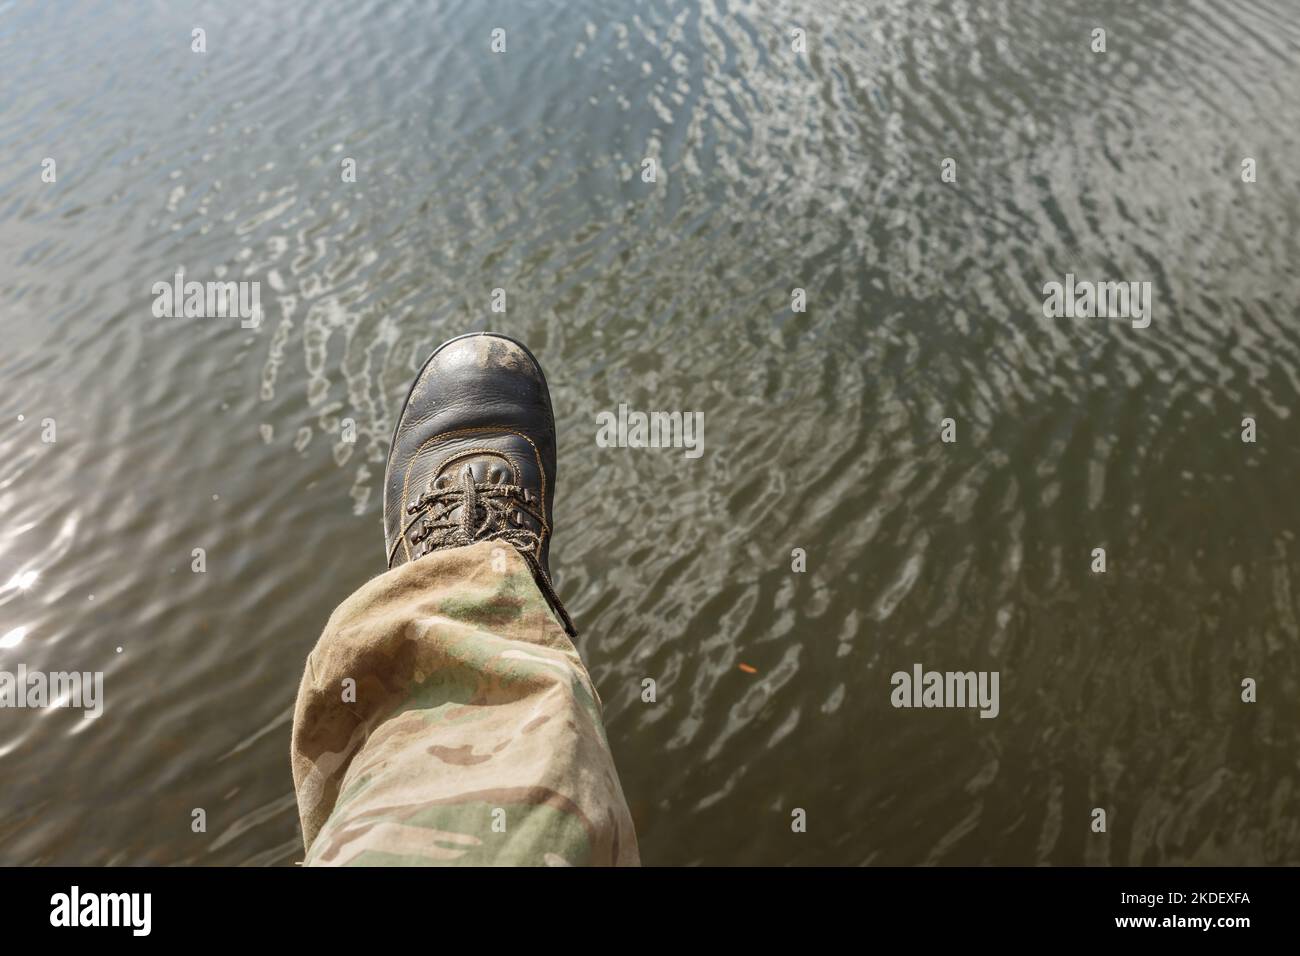 Partie basse de la personne au-dessus de l'eau. La jambe gauche d'un homme dans un pantalon de camouflage et de vieilles bottes se décale au-dessus de l'eau. Banque D'Images